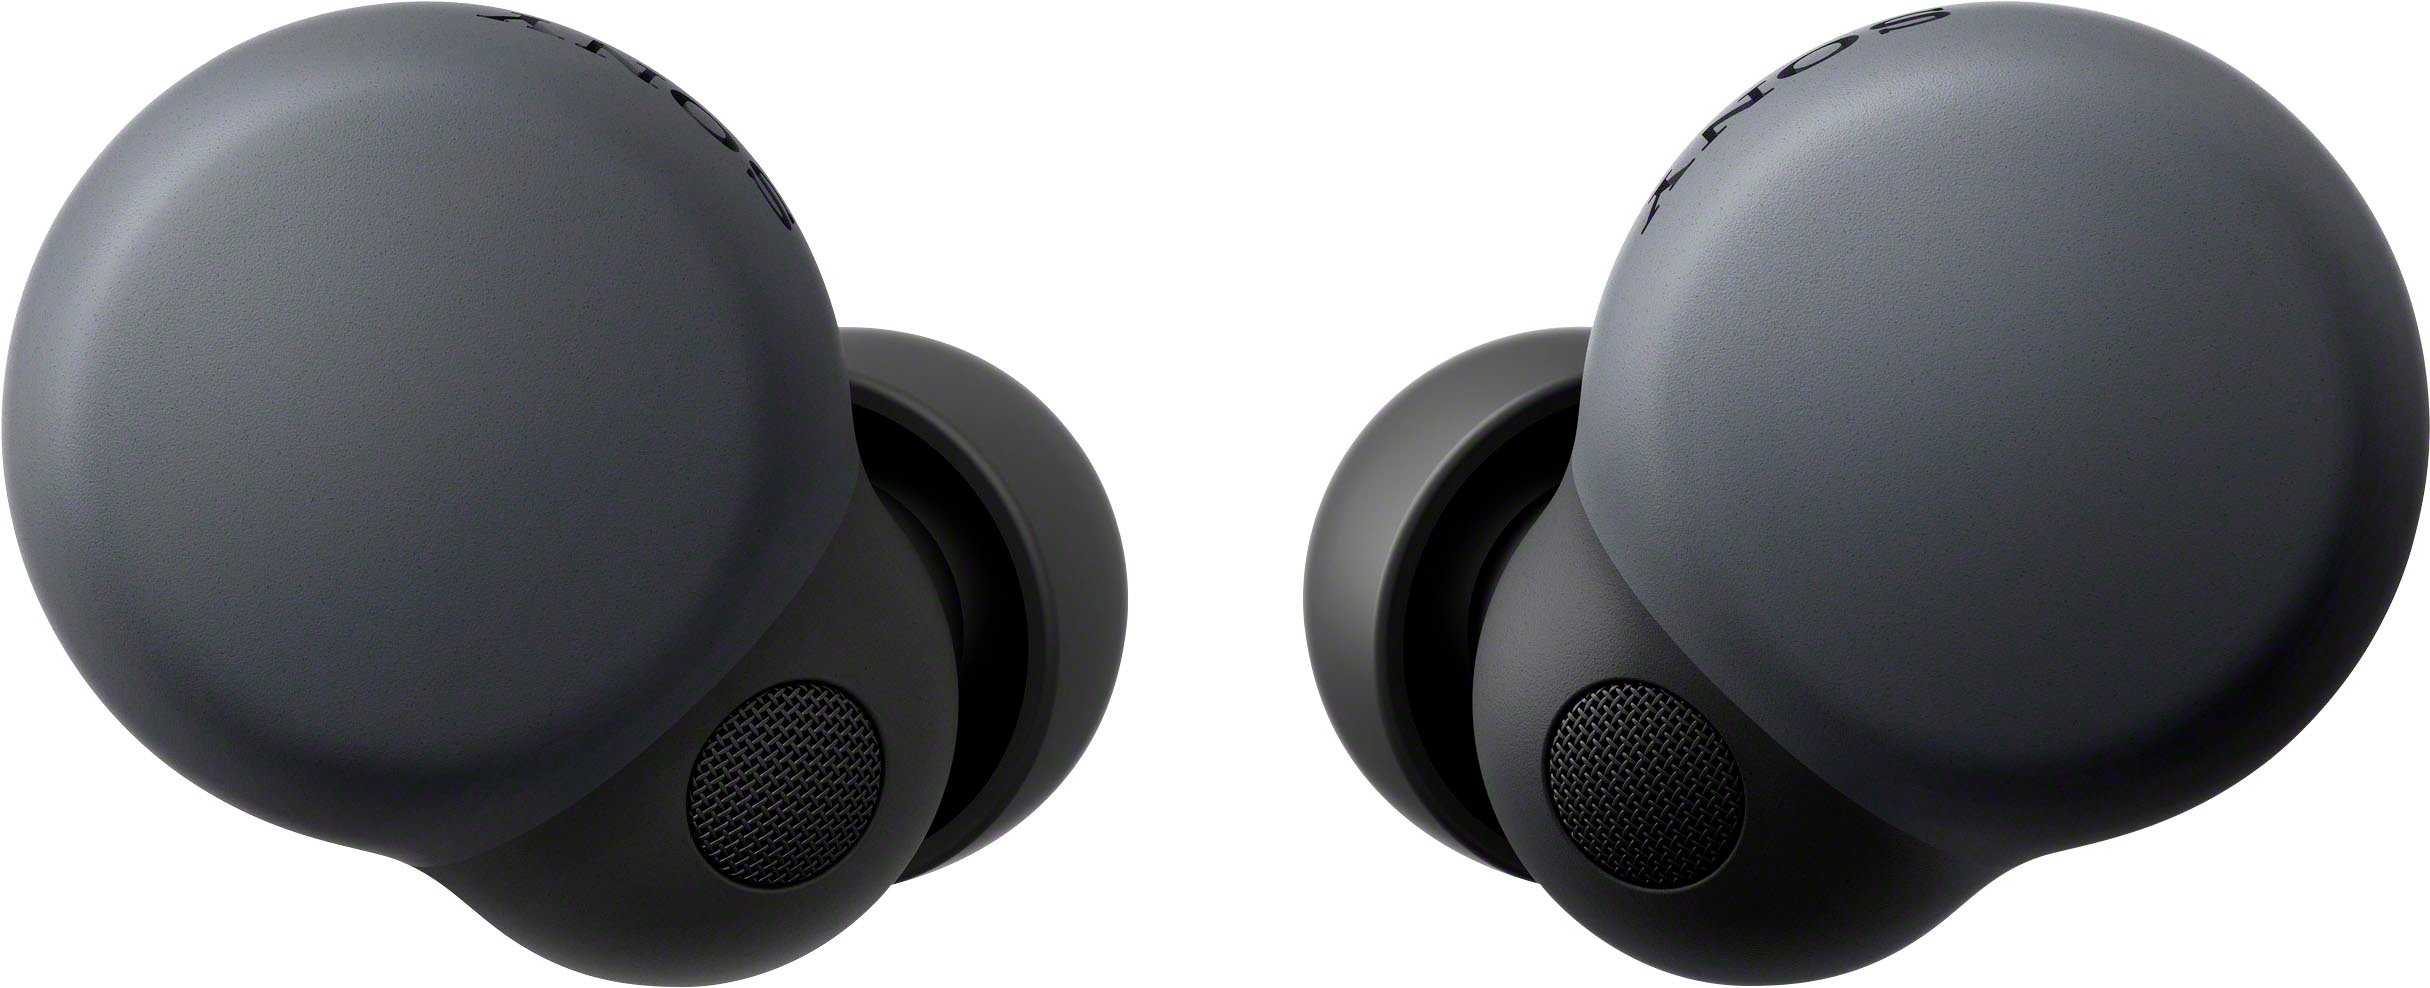 オーディオ機器 イヤフォン Sony LinkBuds S True Wireless Noise Canceling Earbuds Black 